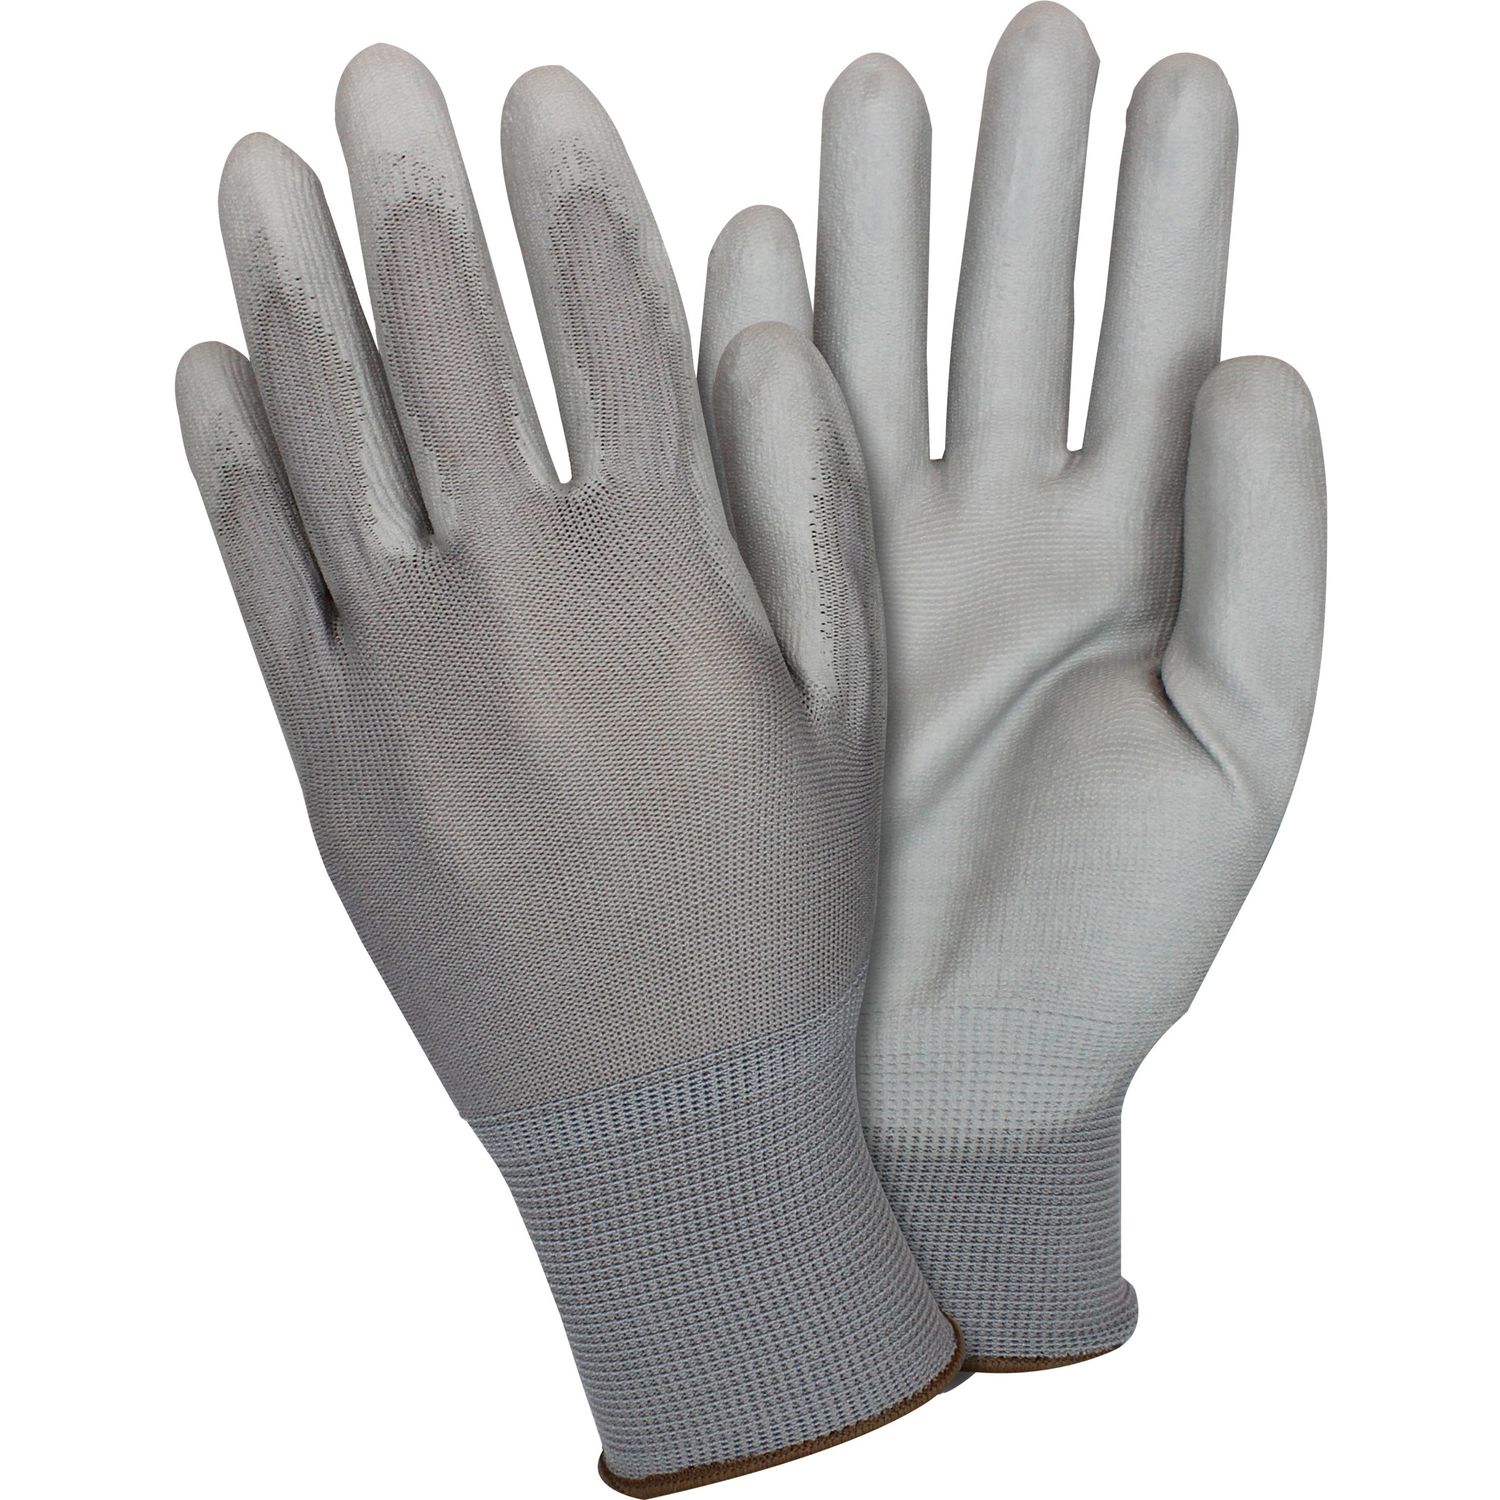 Gray Coated Knit Gloves Polyurethane Coating, Medium Size, Nylon, Gray, Knitted